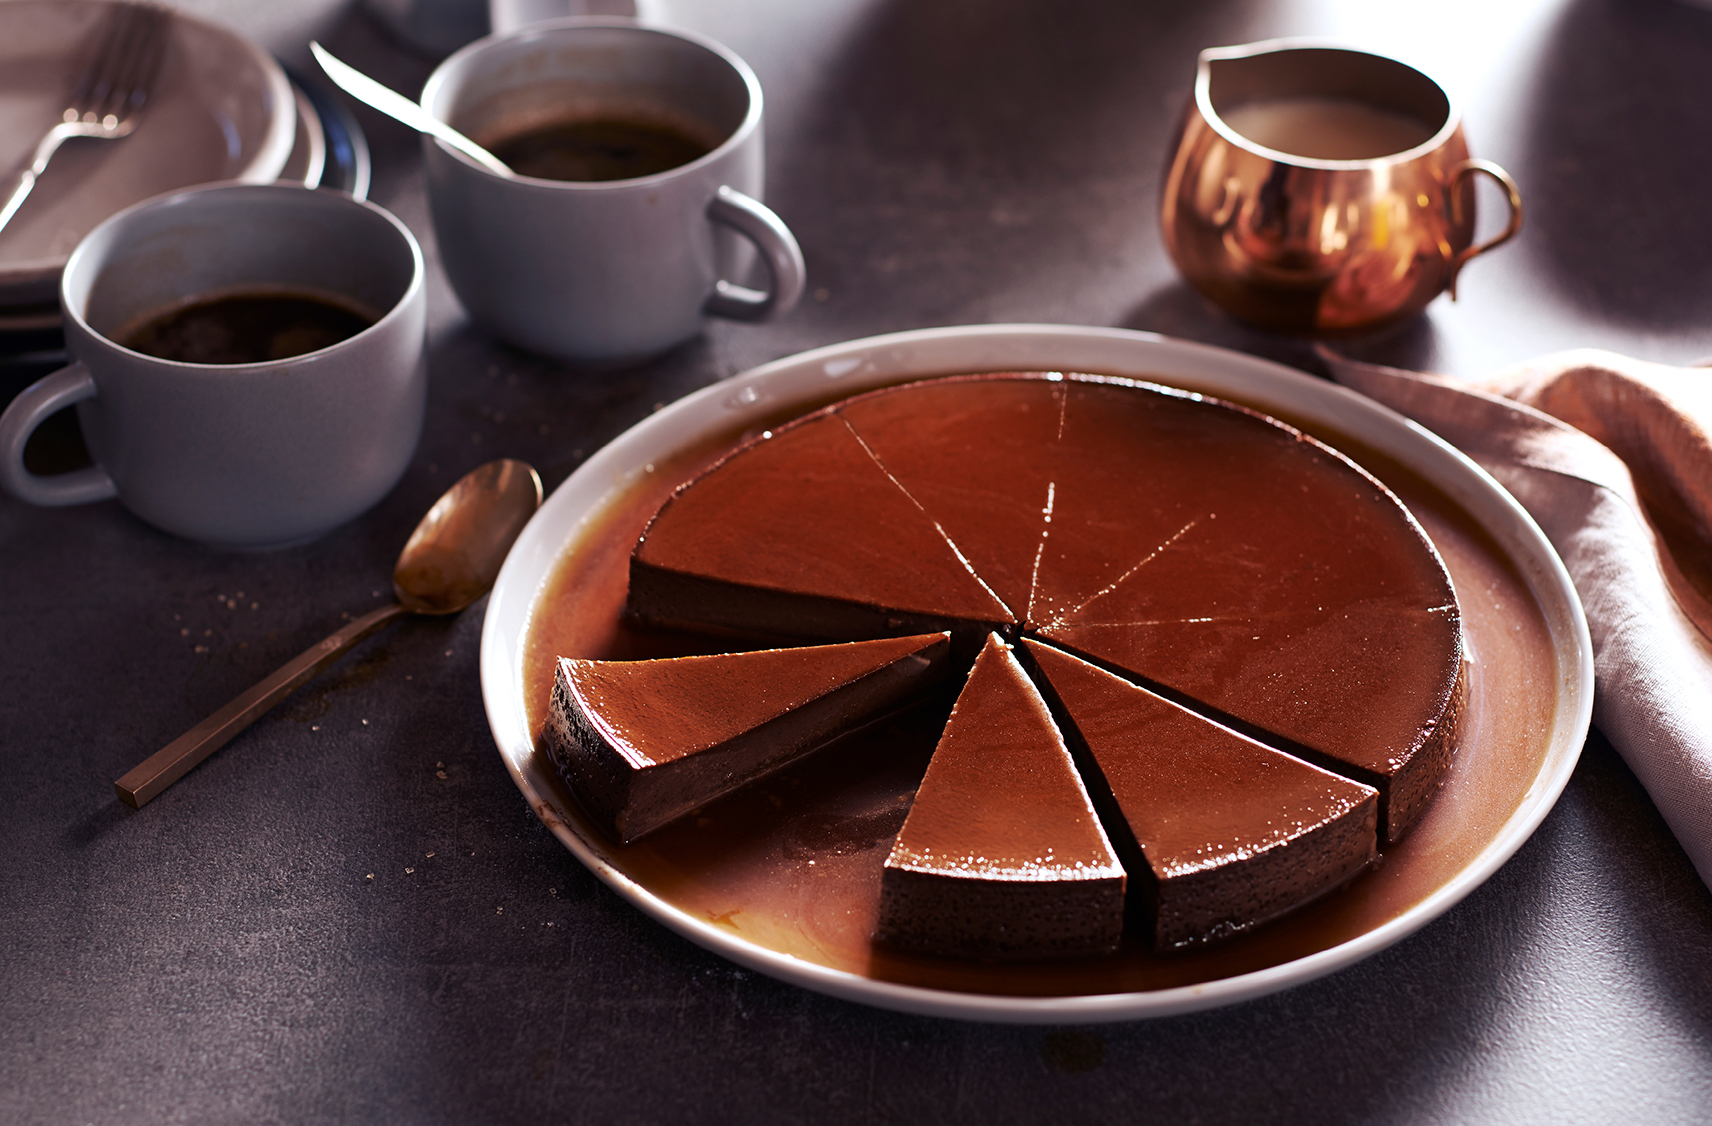 Un flan au chocolat coupé en 8 pointes dont une pointe est manquante à côté de tasses d'espresso et d'un pot de crème